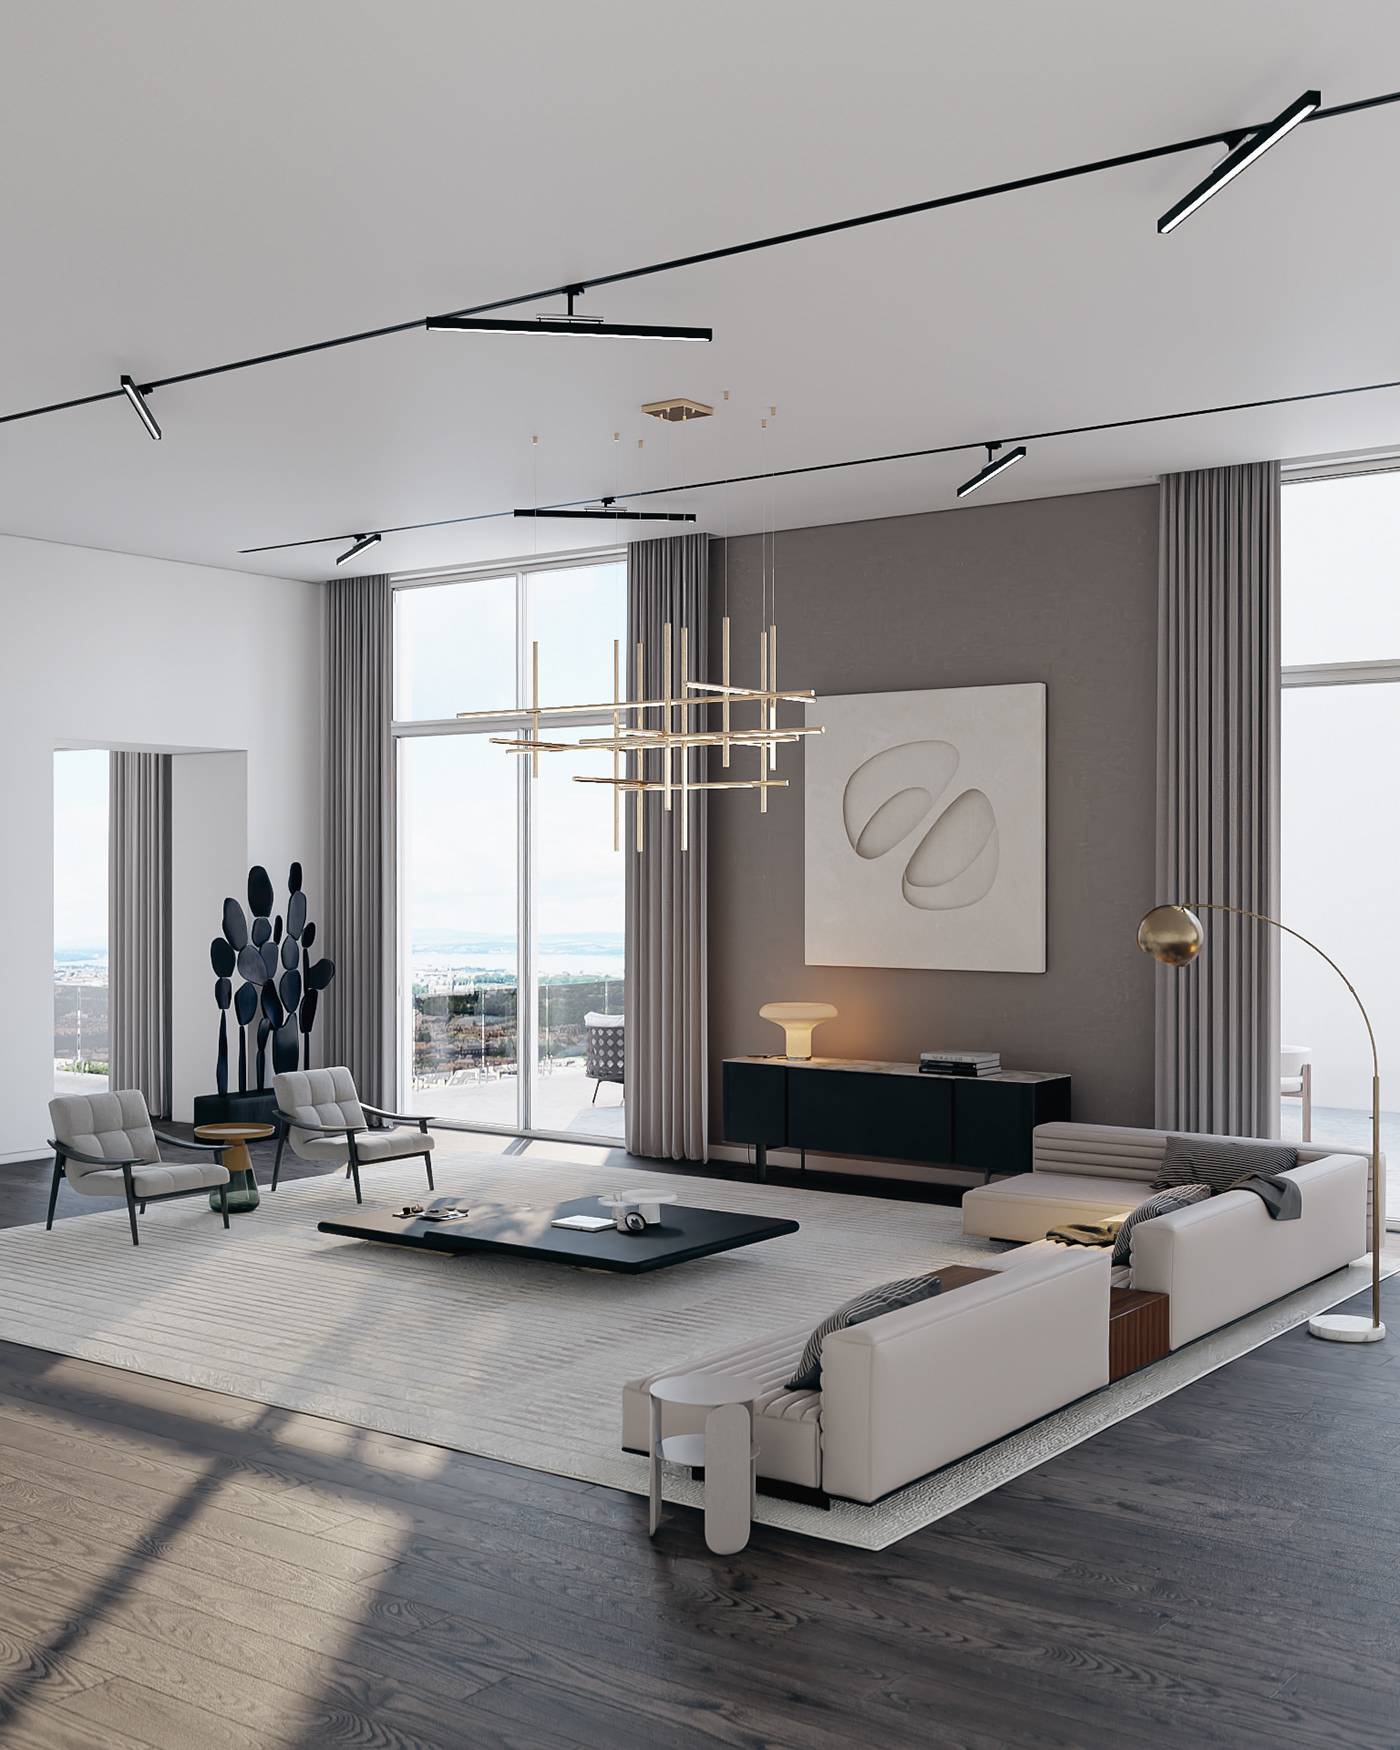 parquet flooring interior design  visualization Render 3ds max archviz vray architecture